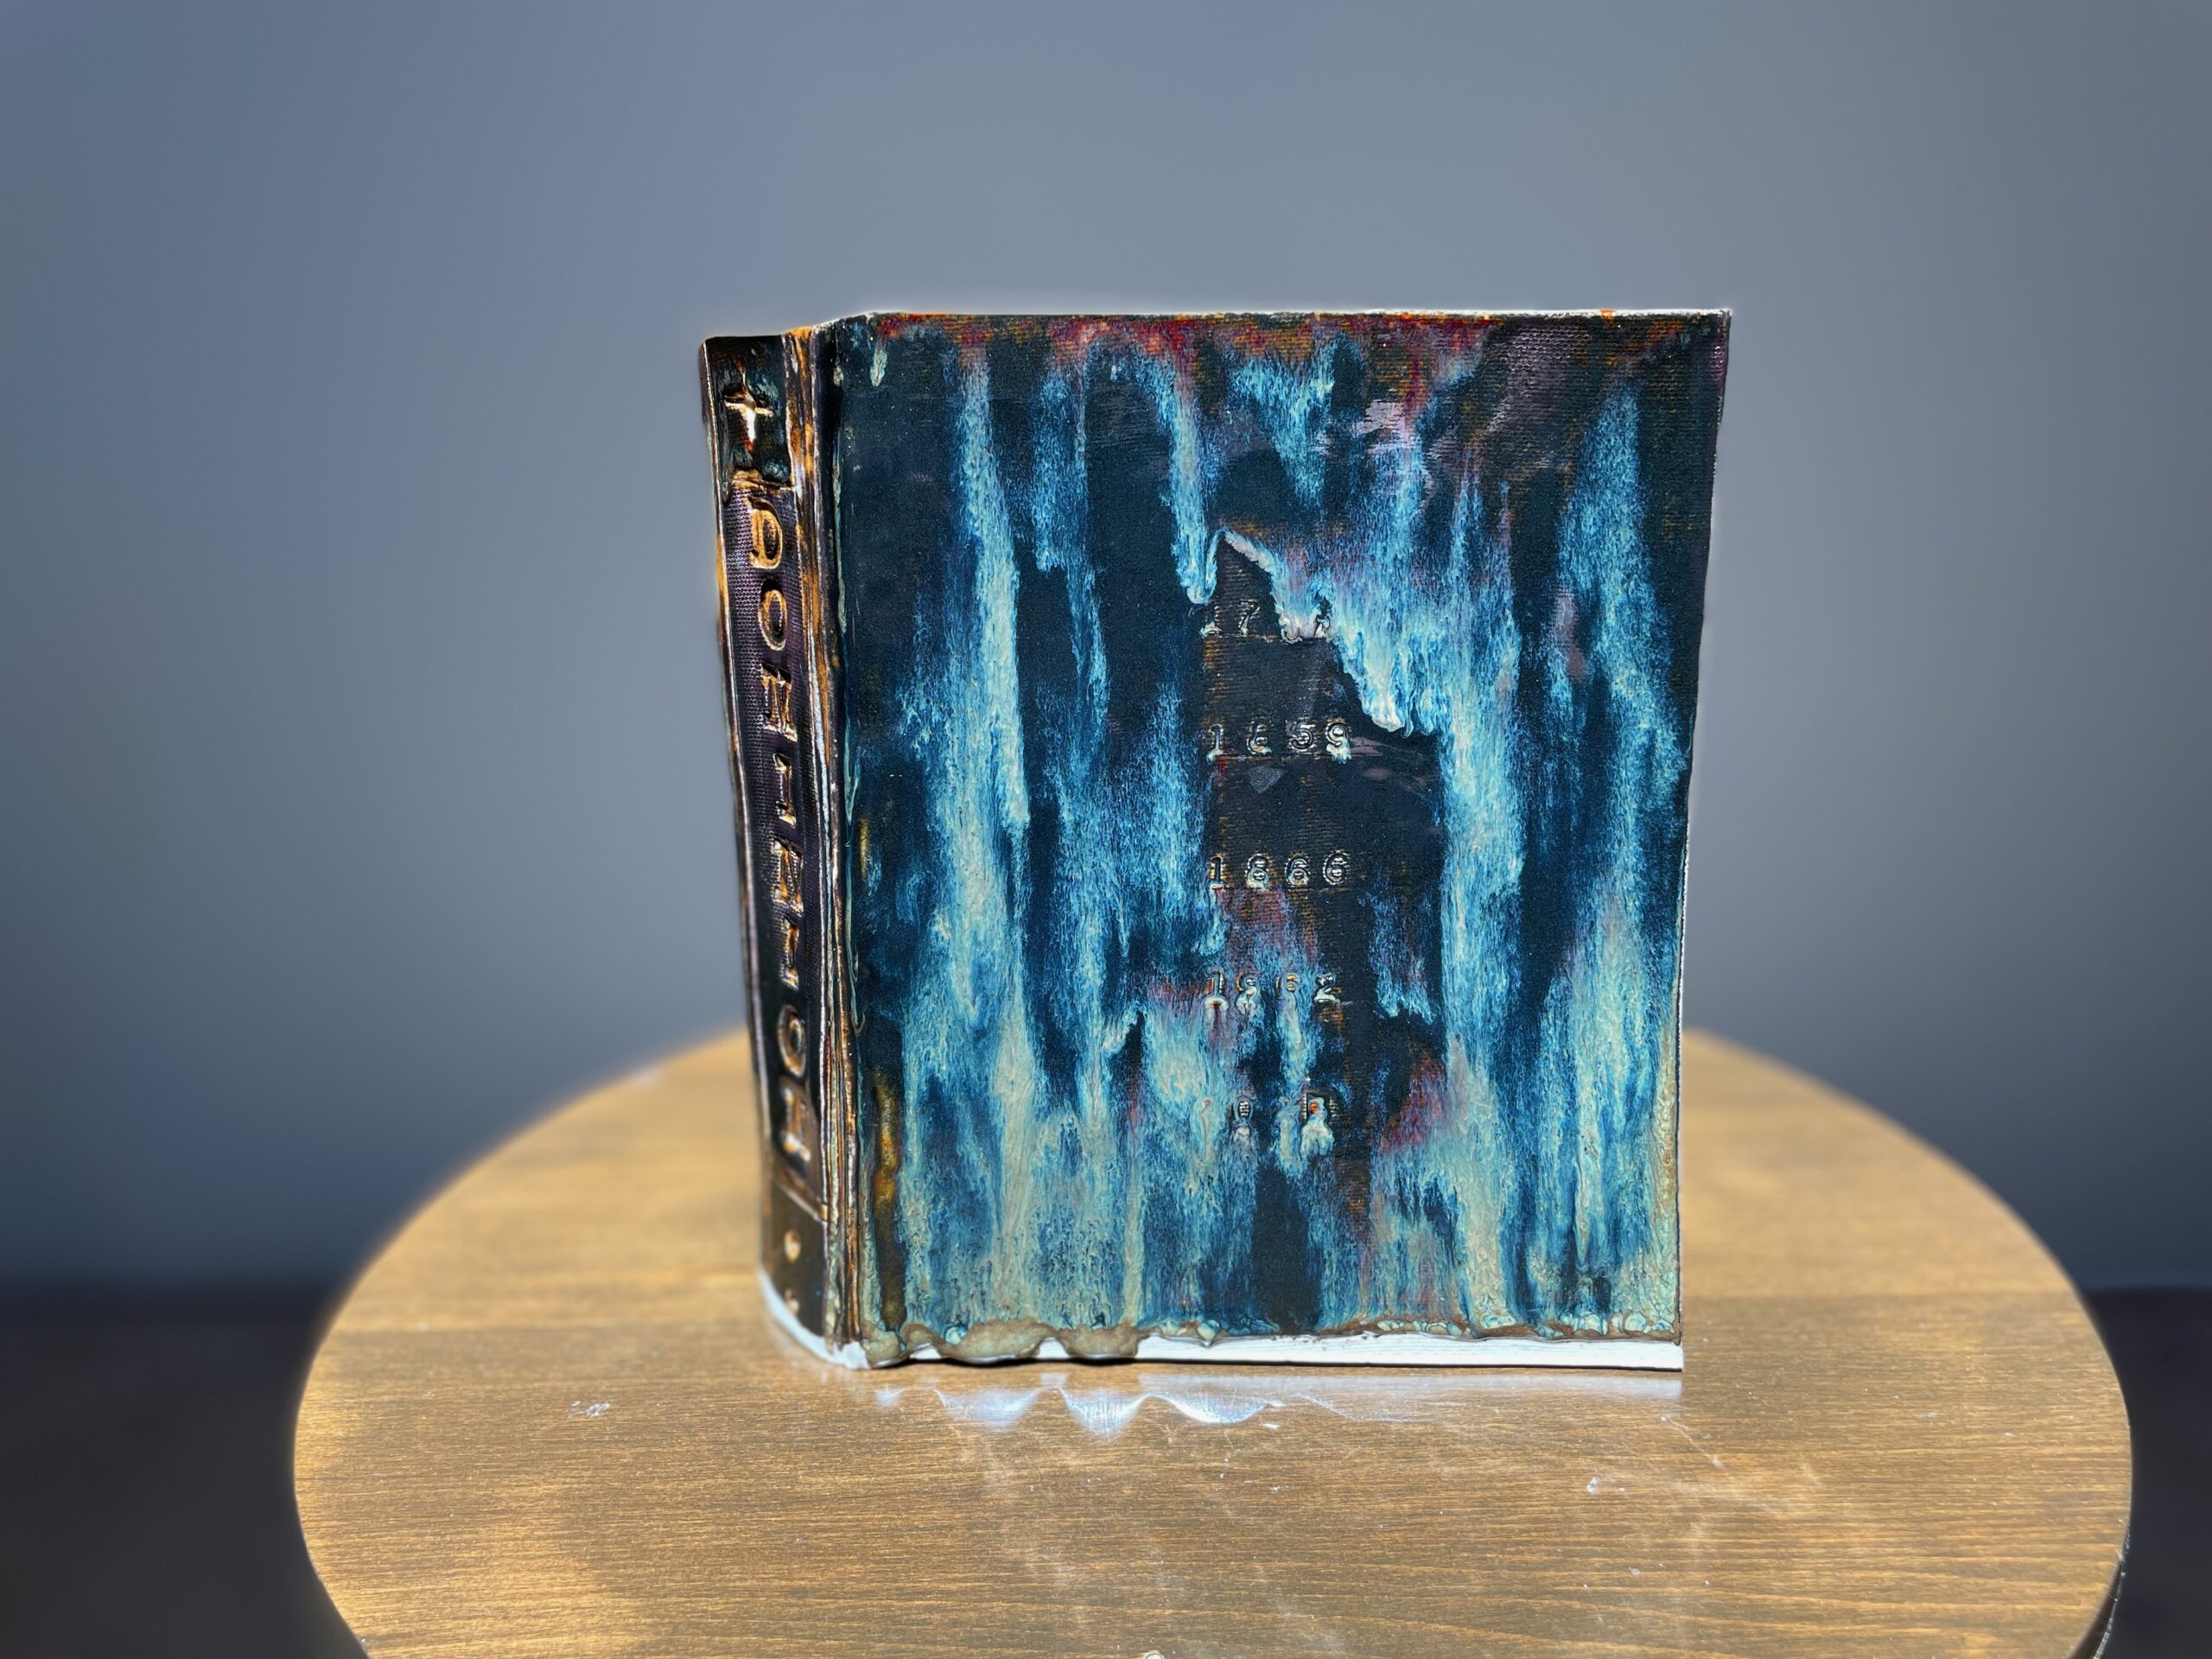 Dan Nuttall's ceramic sculpture of a book titled "Dominion"